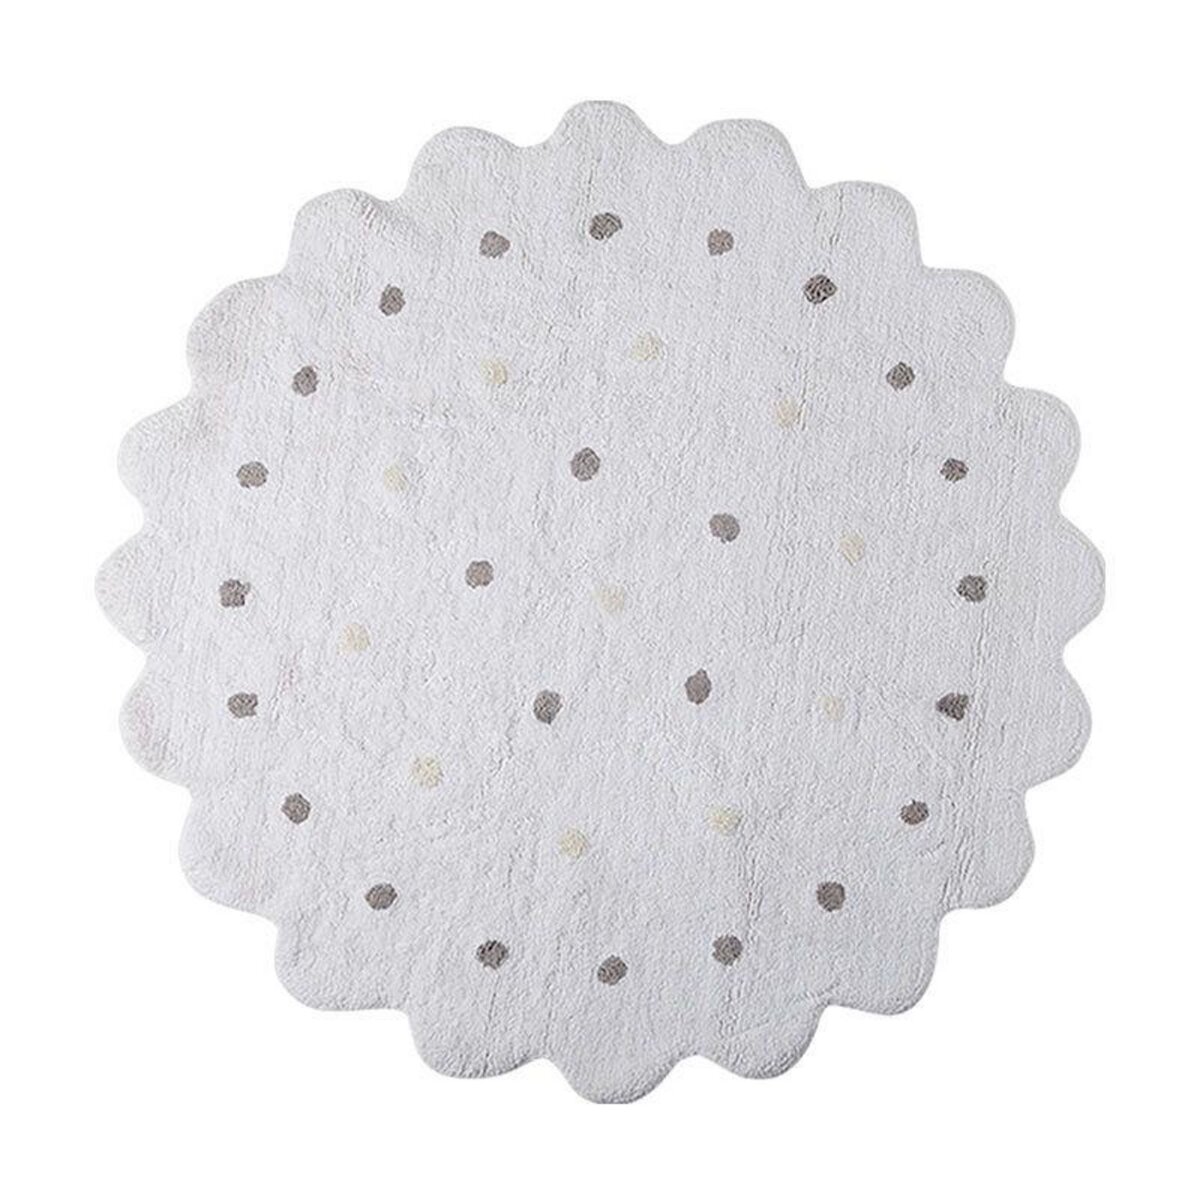 Lorena Canals Tapis coton motif galette rond - blanc - Ø 140 cm